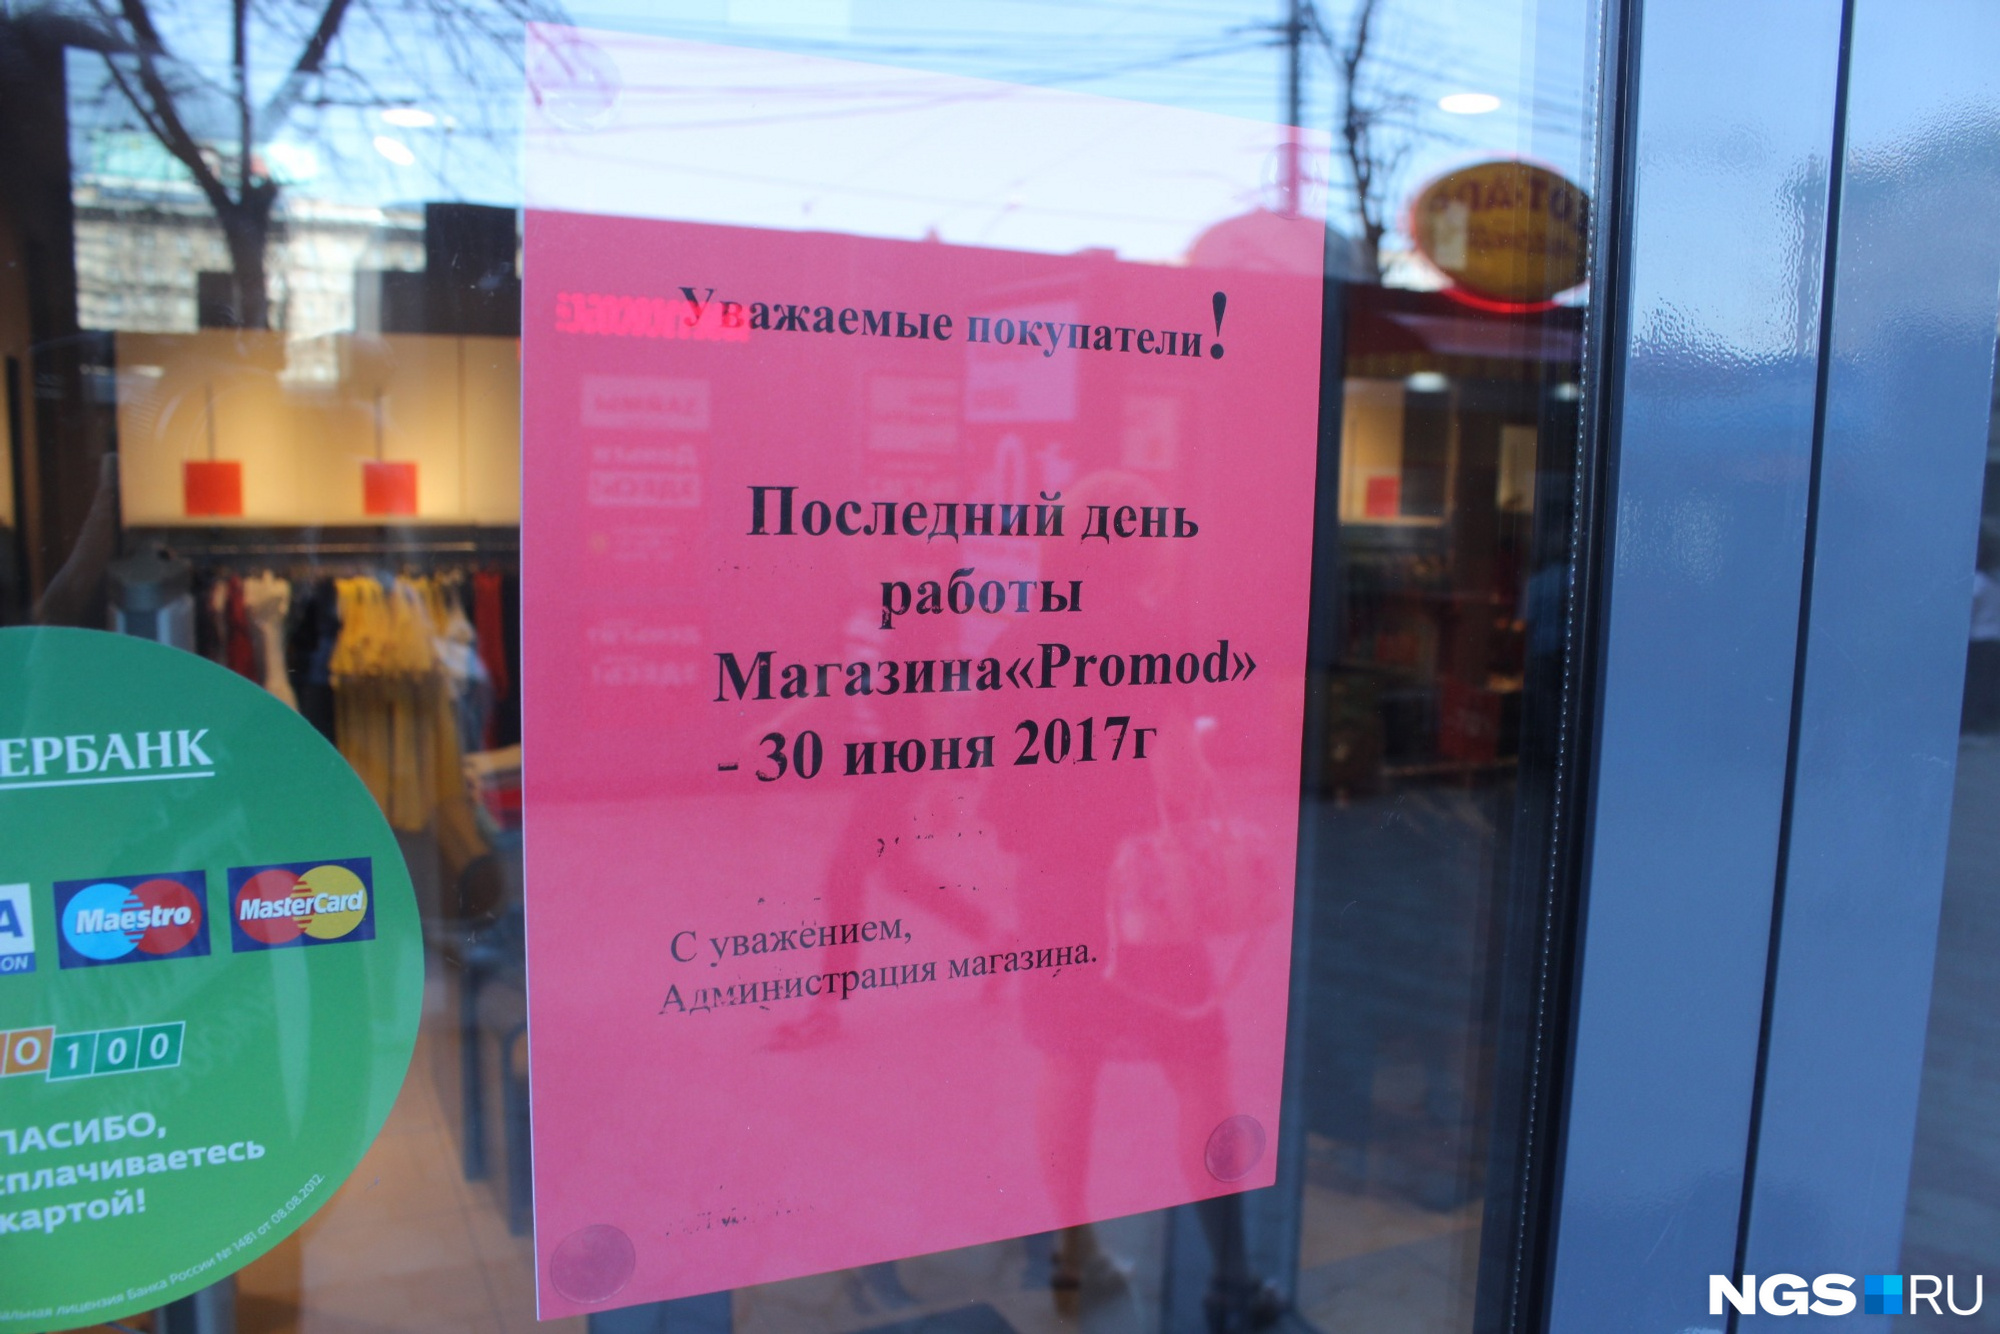 Список закрытых магазинов в Новосибирске. Почему закрыли проспект